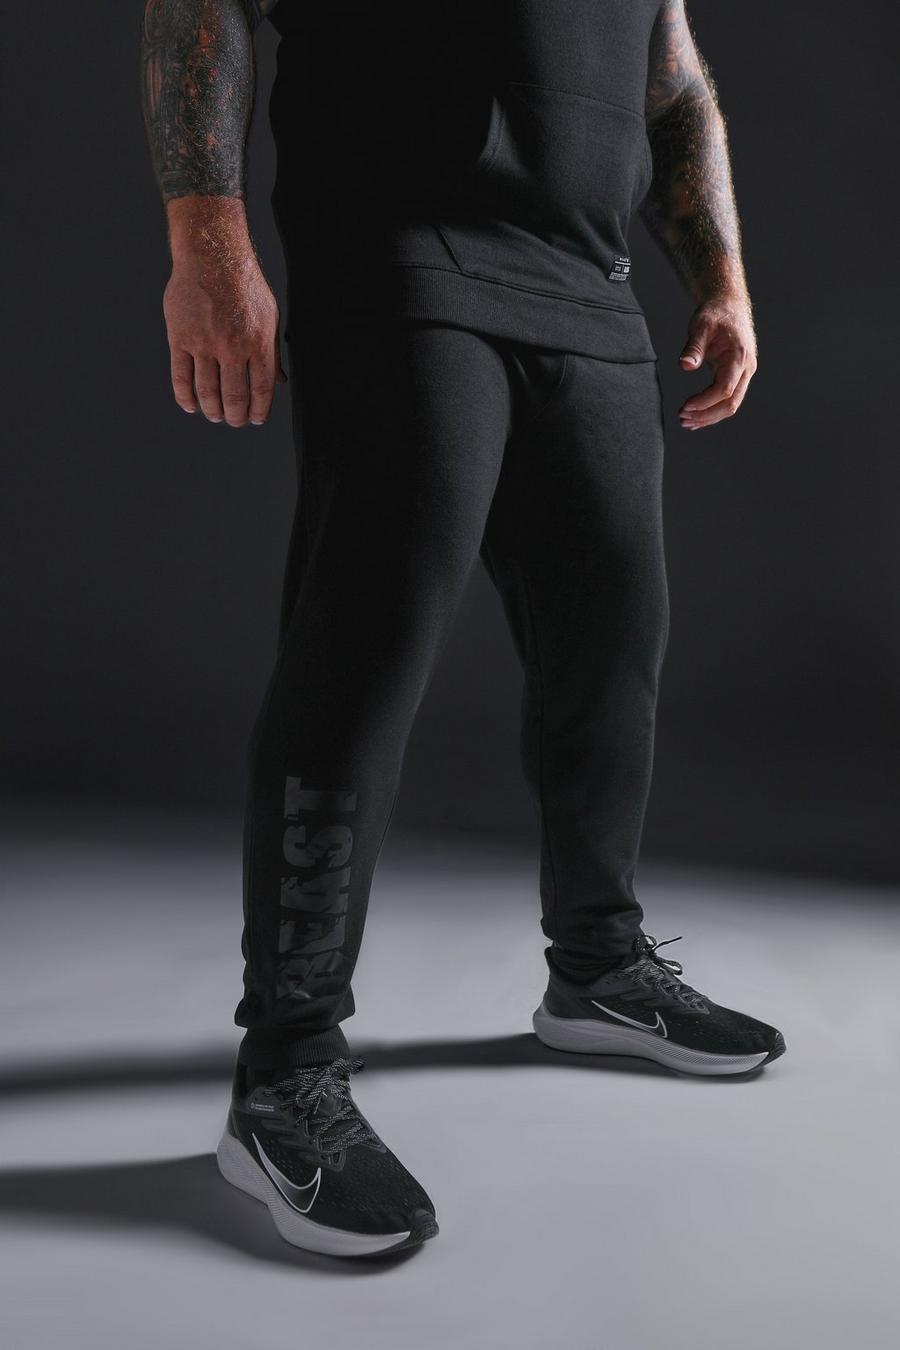 שחור nero מכנסי טרנינג ספורטיביים לחדר הכושר עם כיתוב X Beast מסדרת Man image number 1